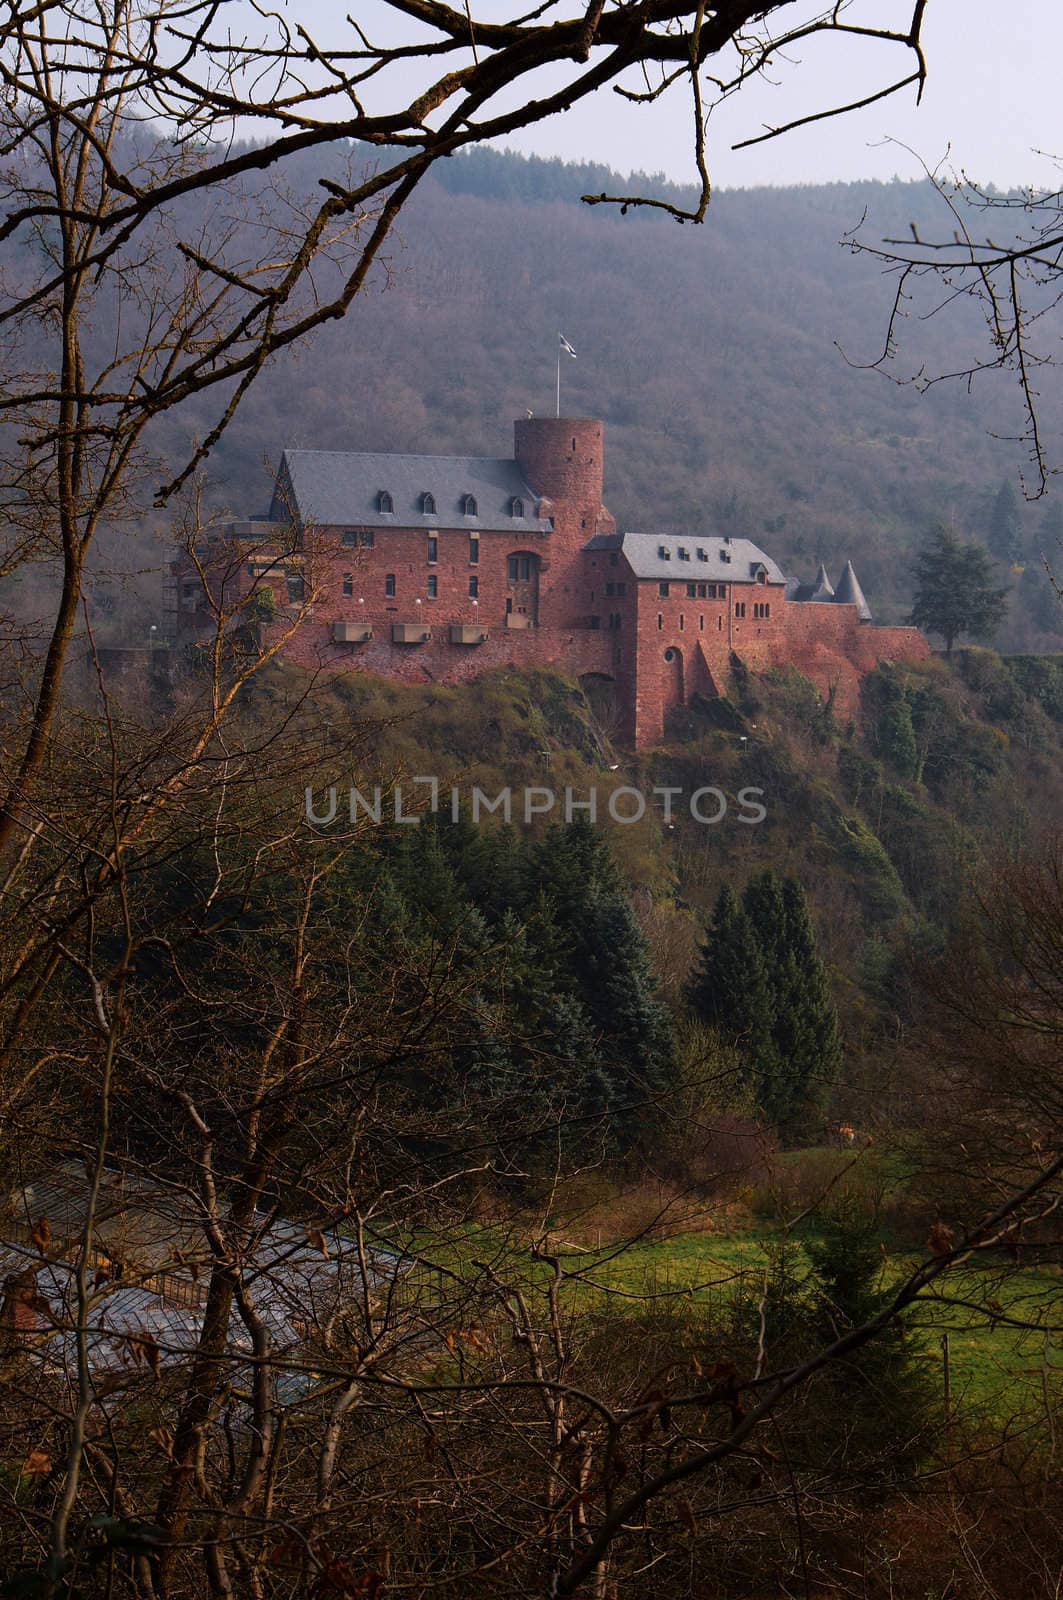 Castle "Burg Hengebach" in Eifel mountains, Germany